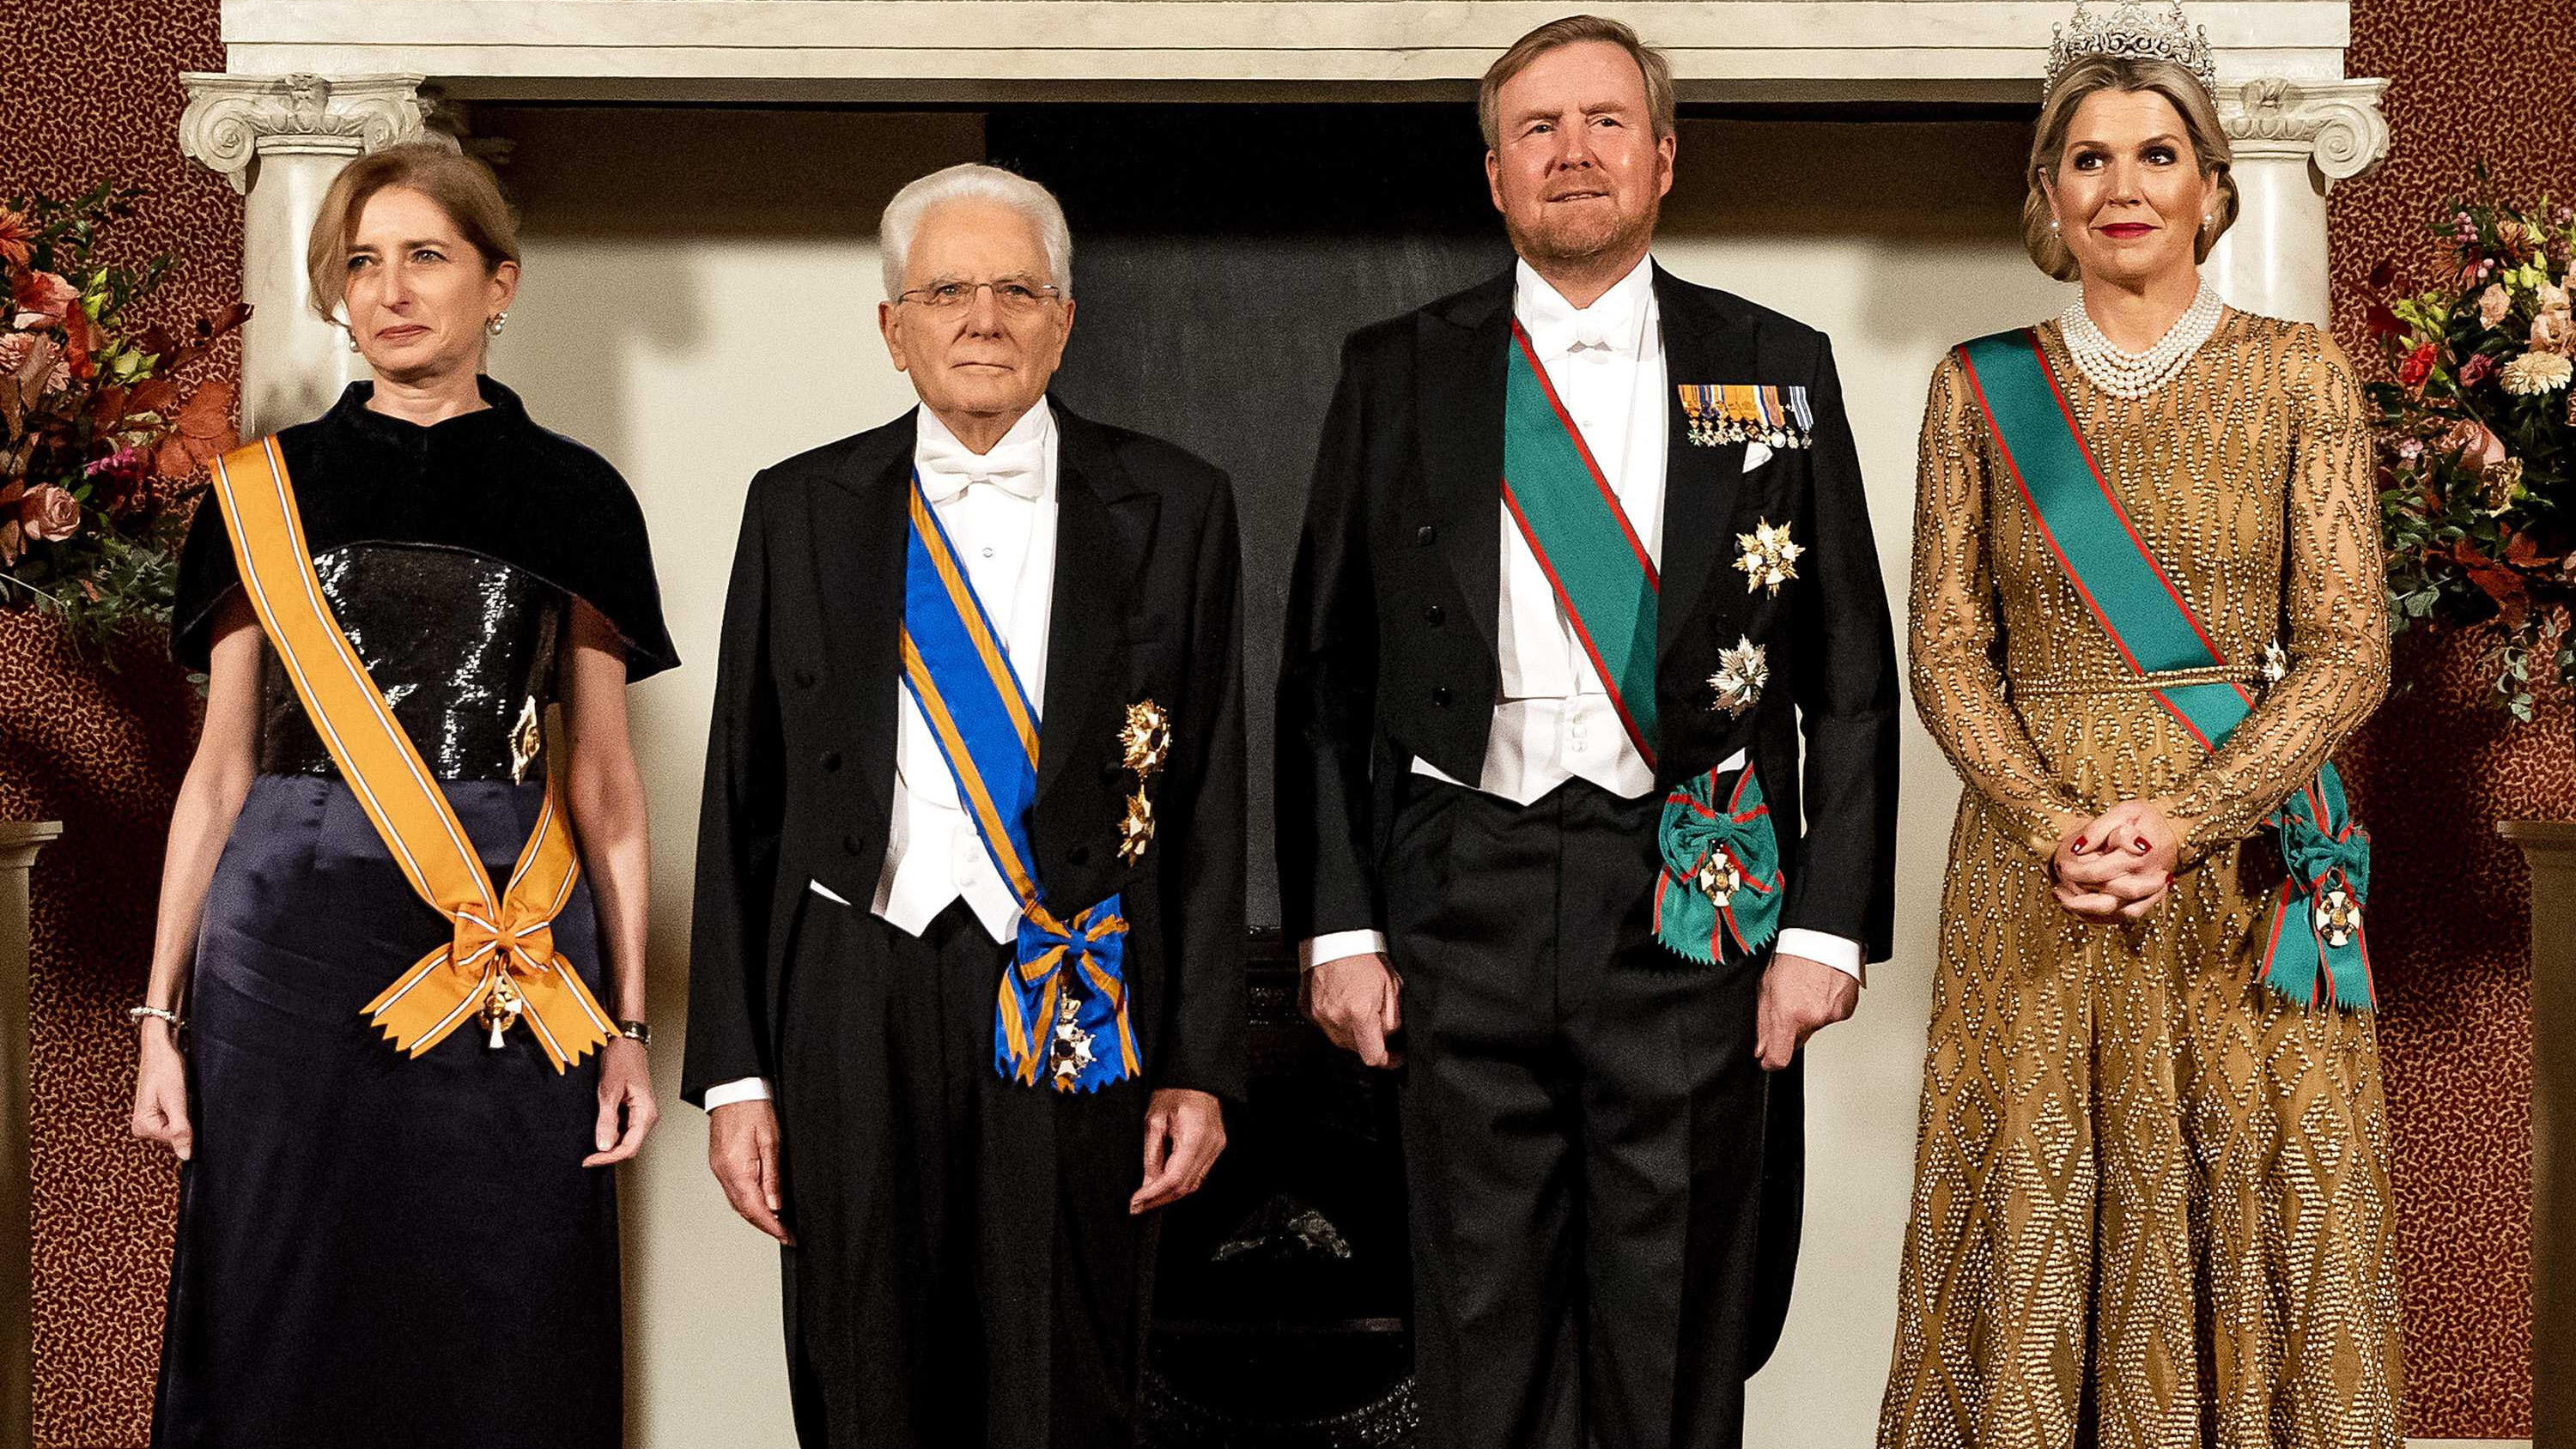 König Willem-Alexander und Königin Máxima posieren für ein Gruppenfoto zusammen mit dem italienischen Präsidenten Sergio Mattarella und seiner Tochter Laura Mattarella